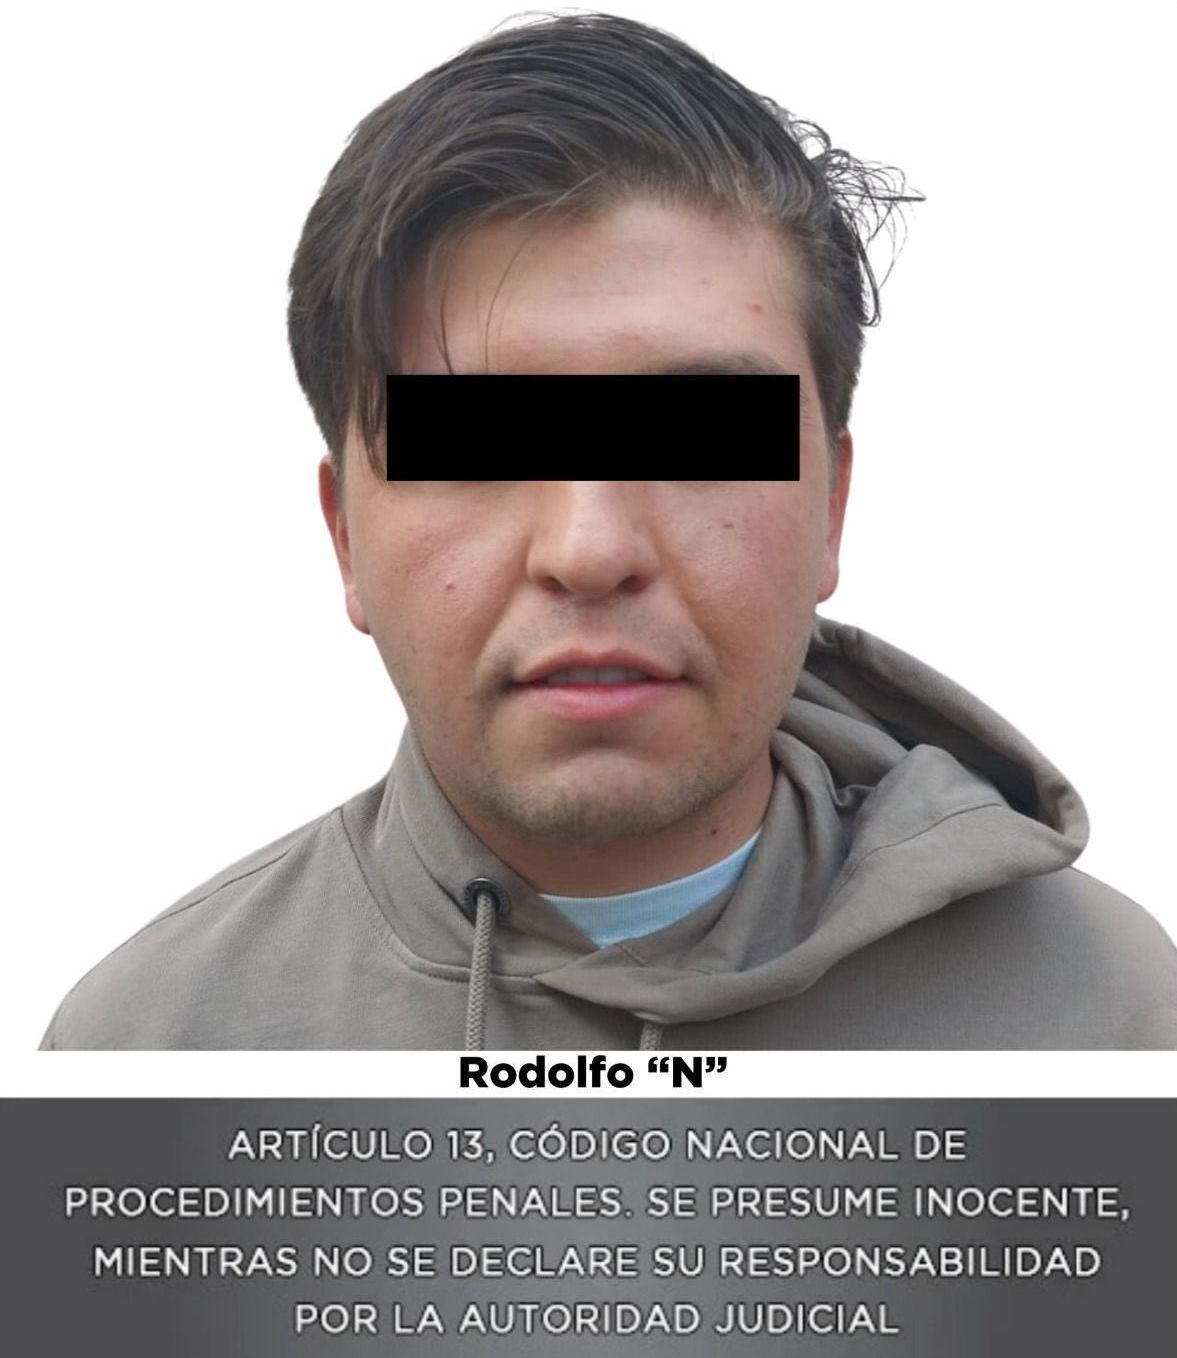 Rodolfo 'N' continúa preso en el penal de Barrientos en el Estado de México.